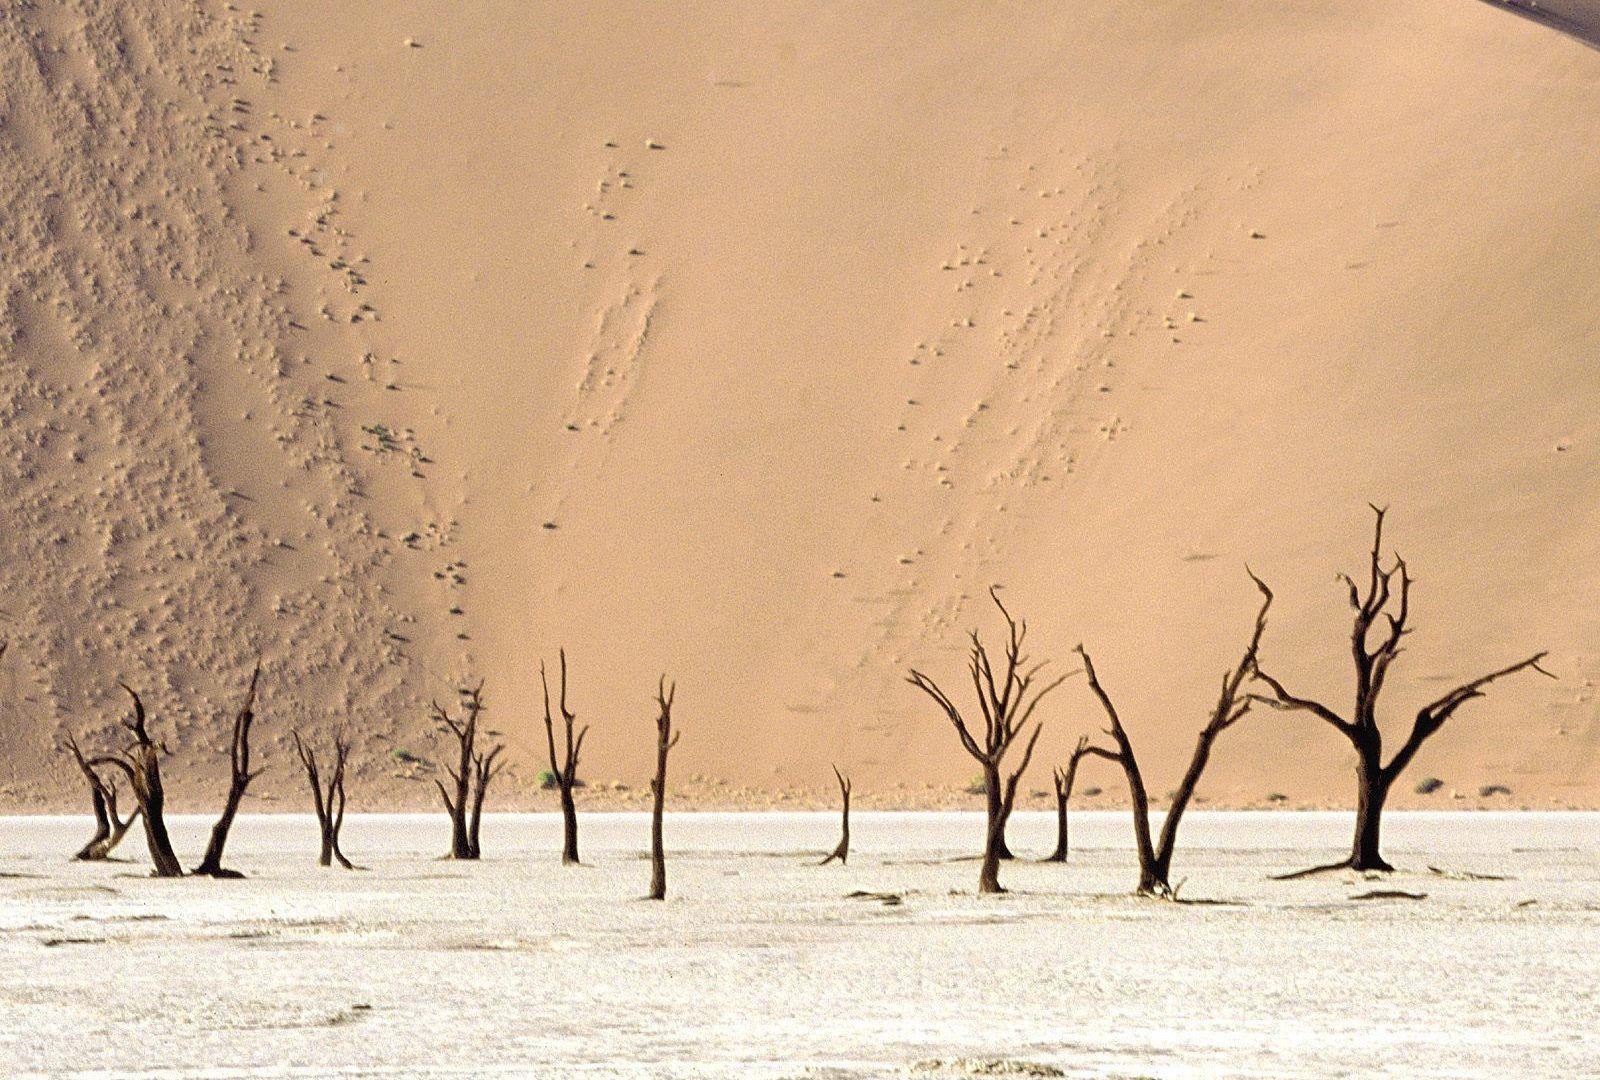 Namib Tag wallpaper: Meeting Namib Coastal Southern Africa Angola